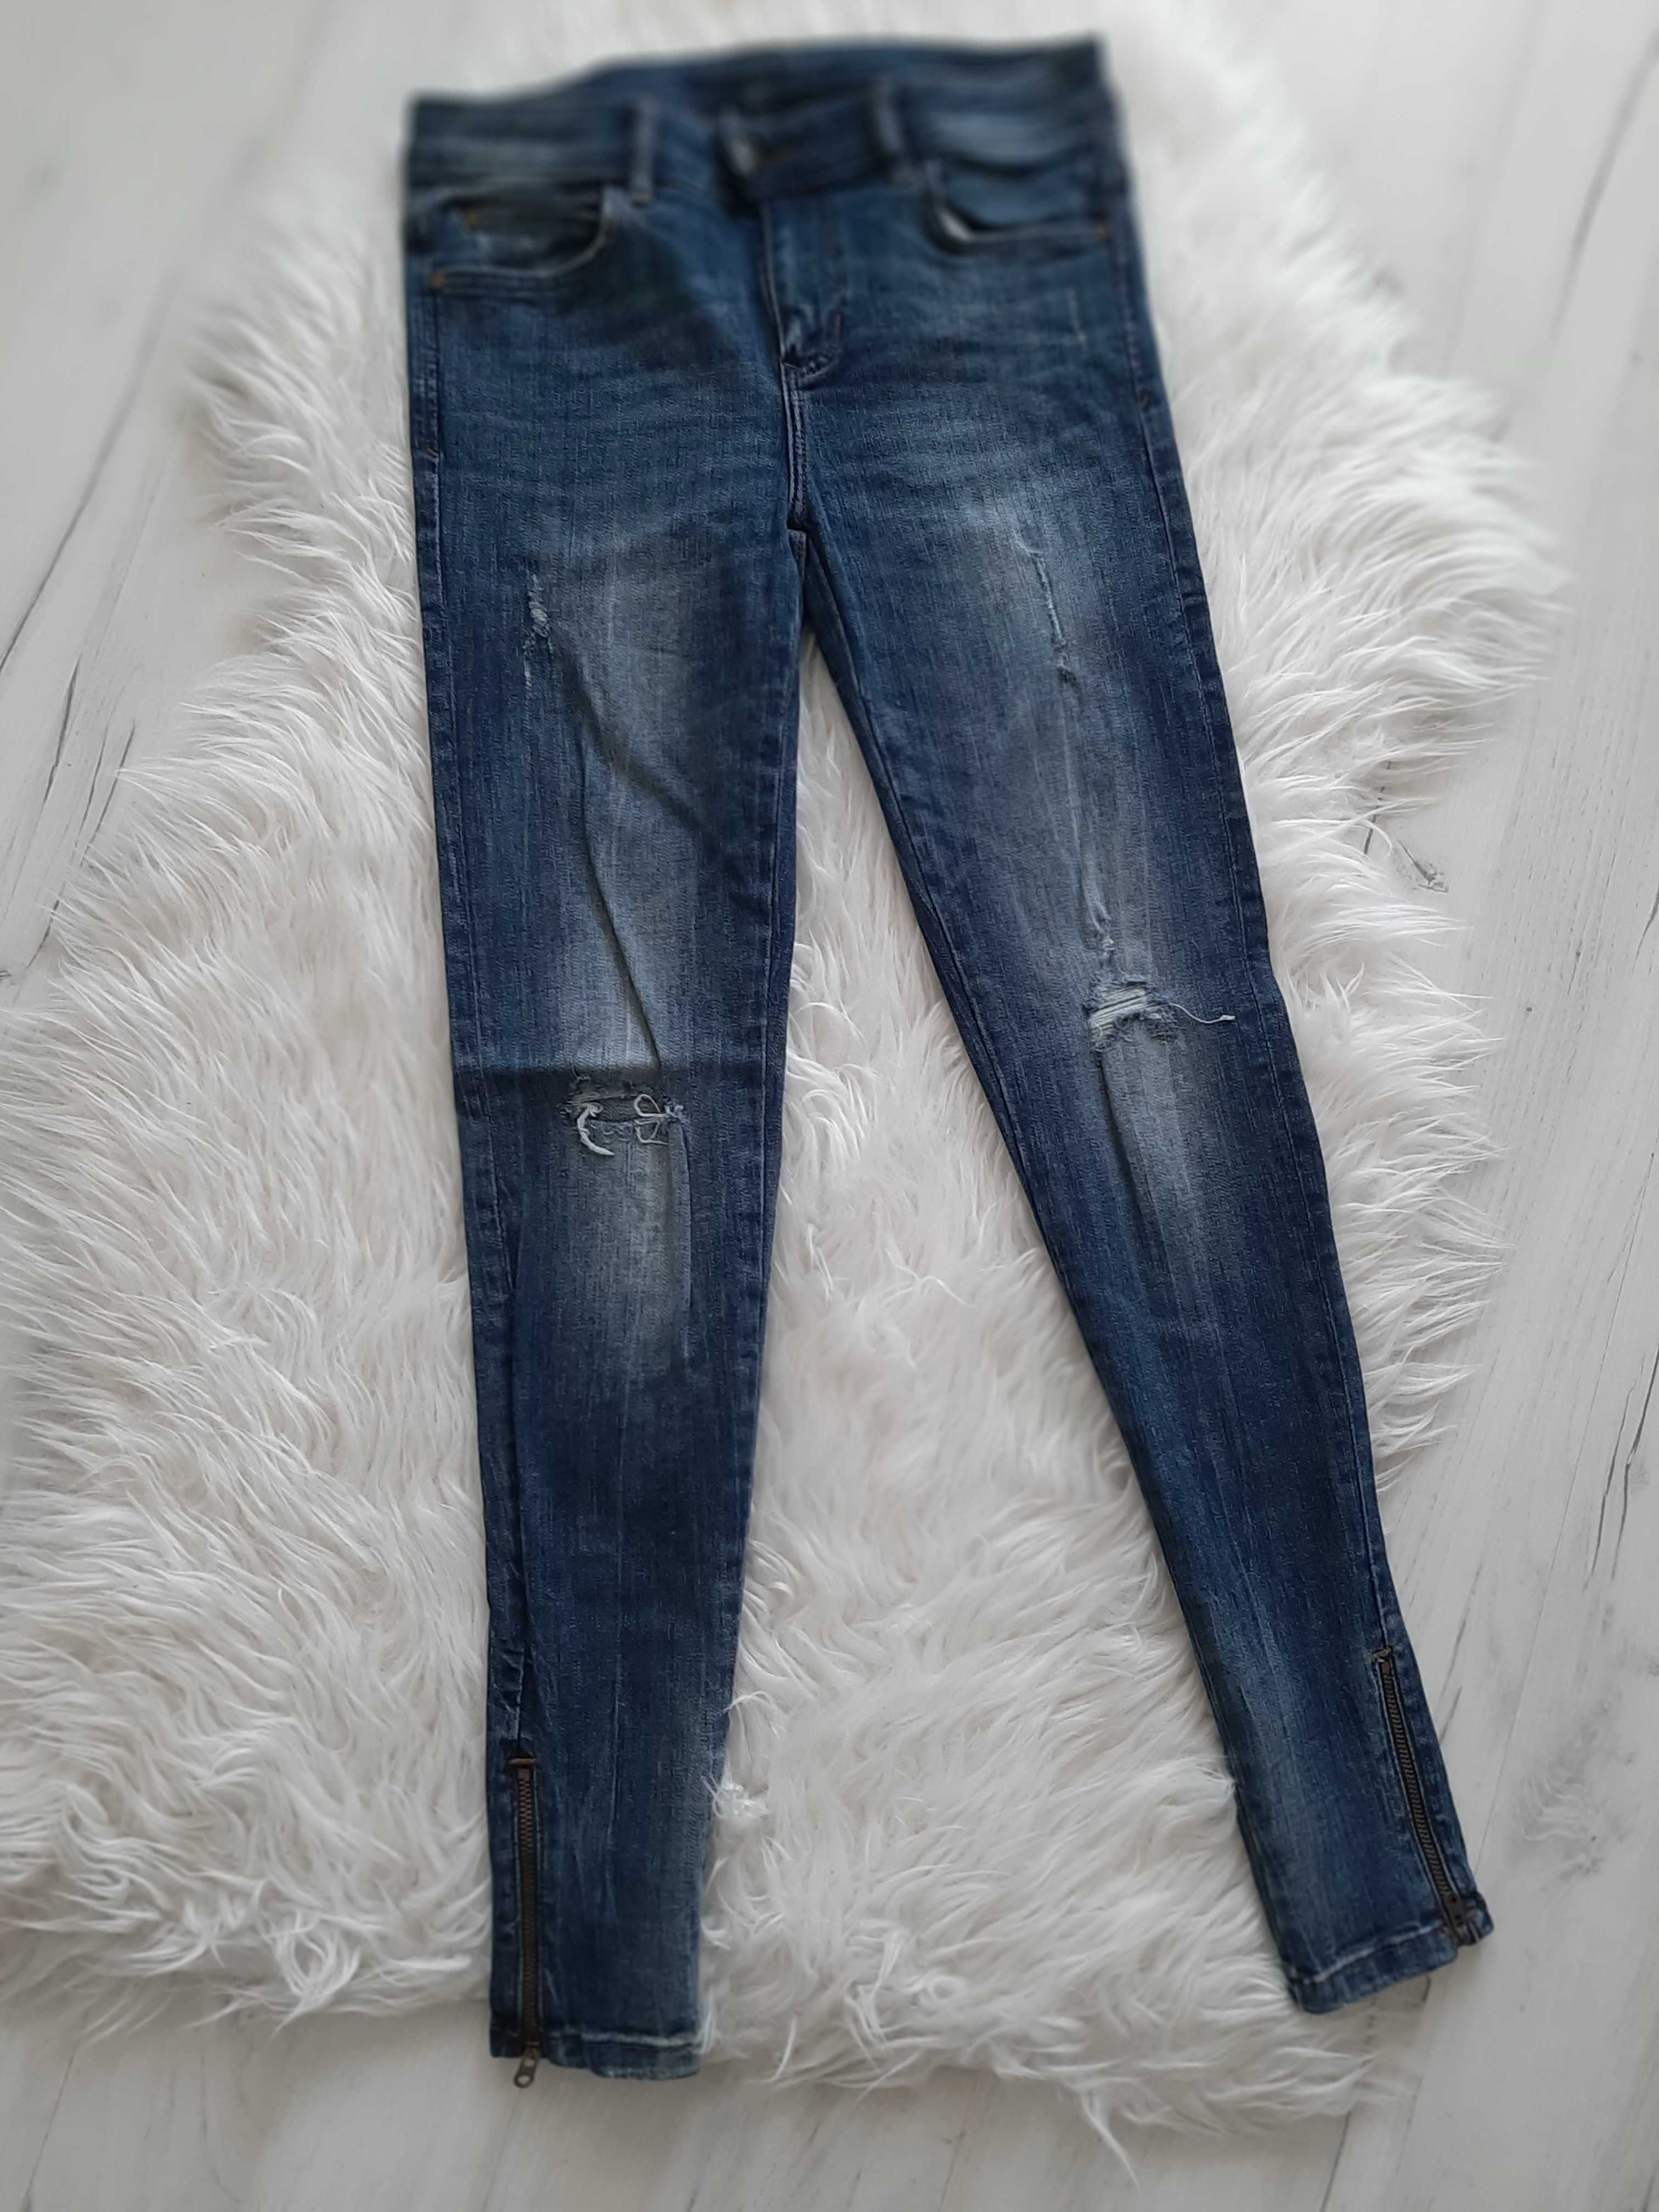 ZARA piękne jeansy rurki z zameczkami XS 34